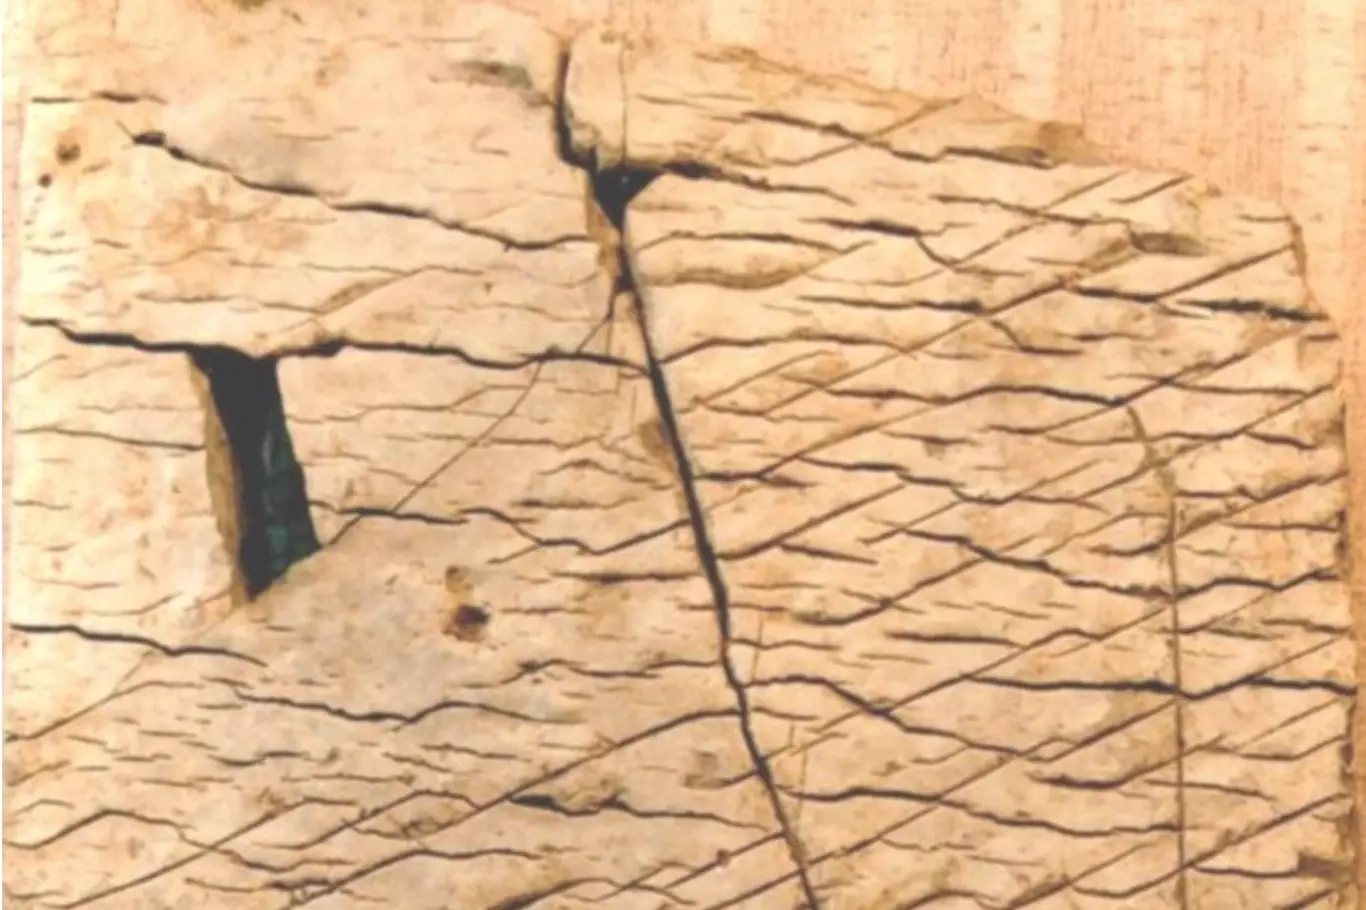 Daška mapa - mapa stará 120 milionů let?